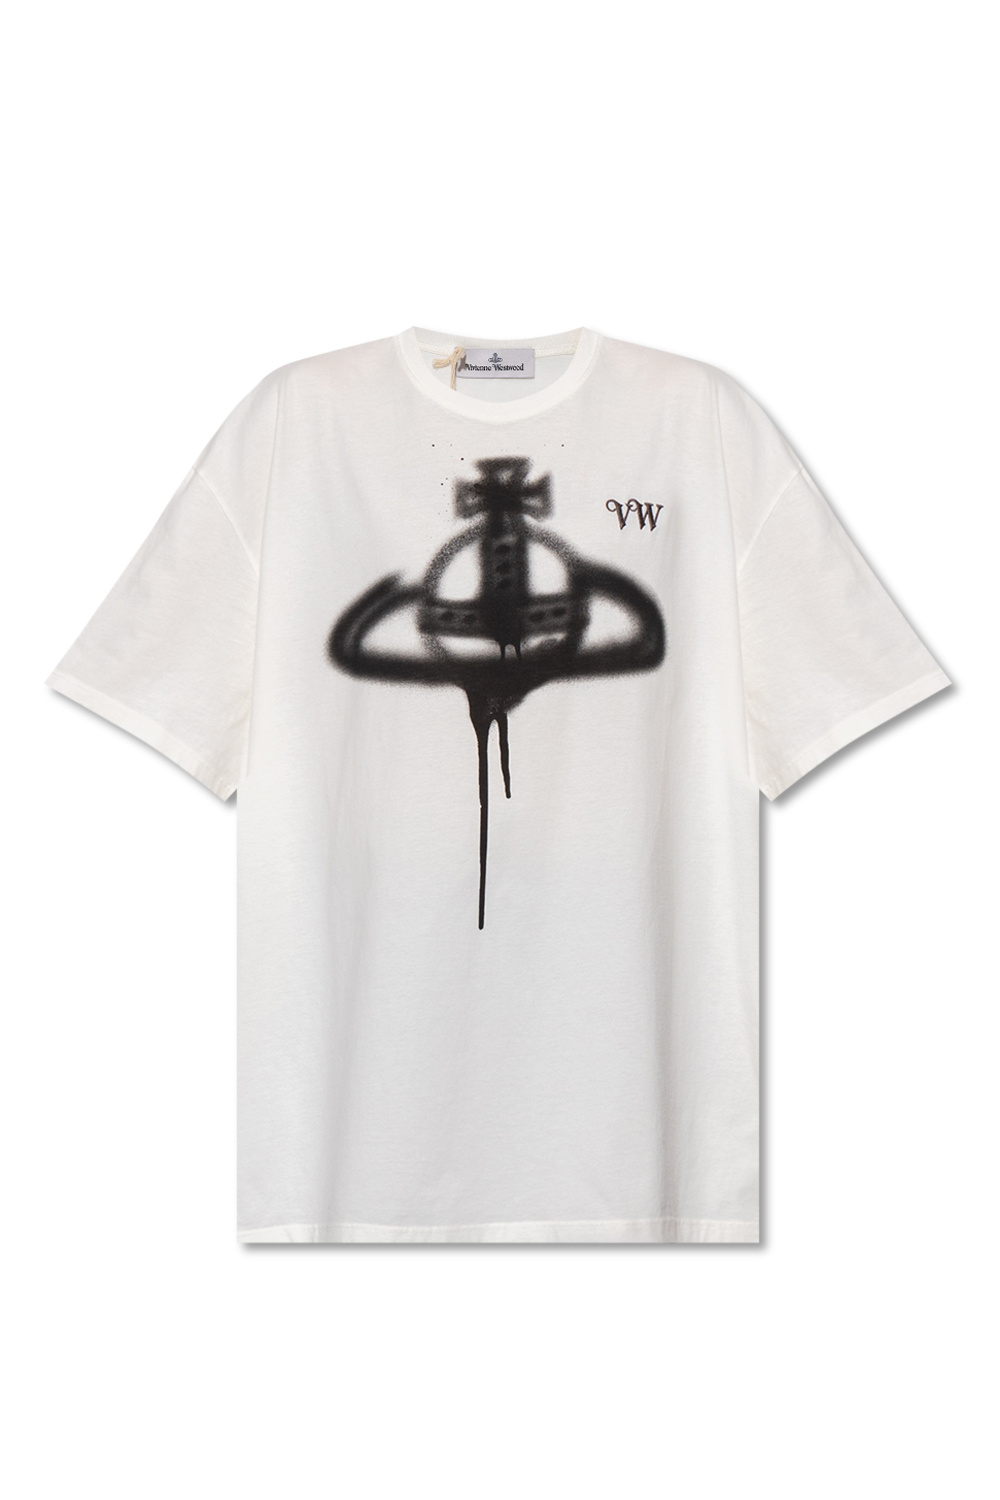 IetpShops Norway - lanvin sweatshirt mit logo stickerei item - T - shirt  with logo Vivienne Westwood